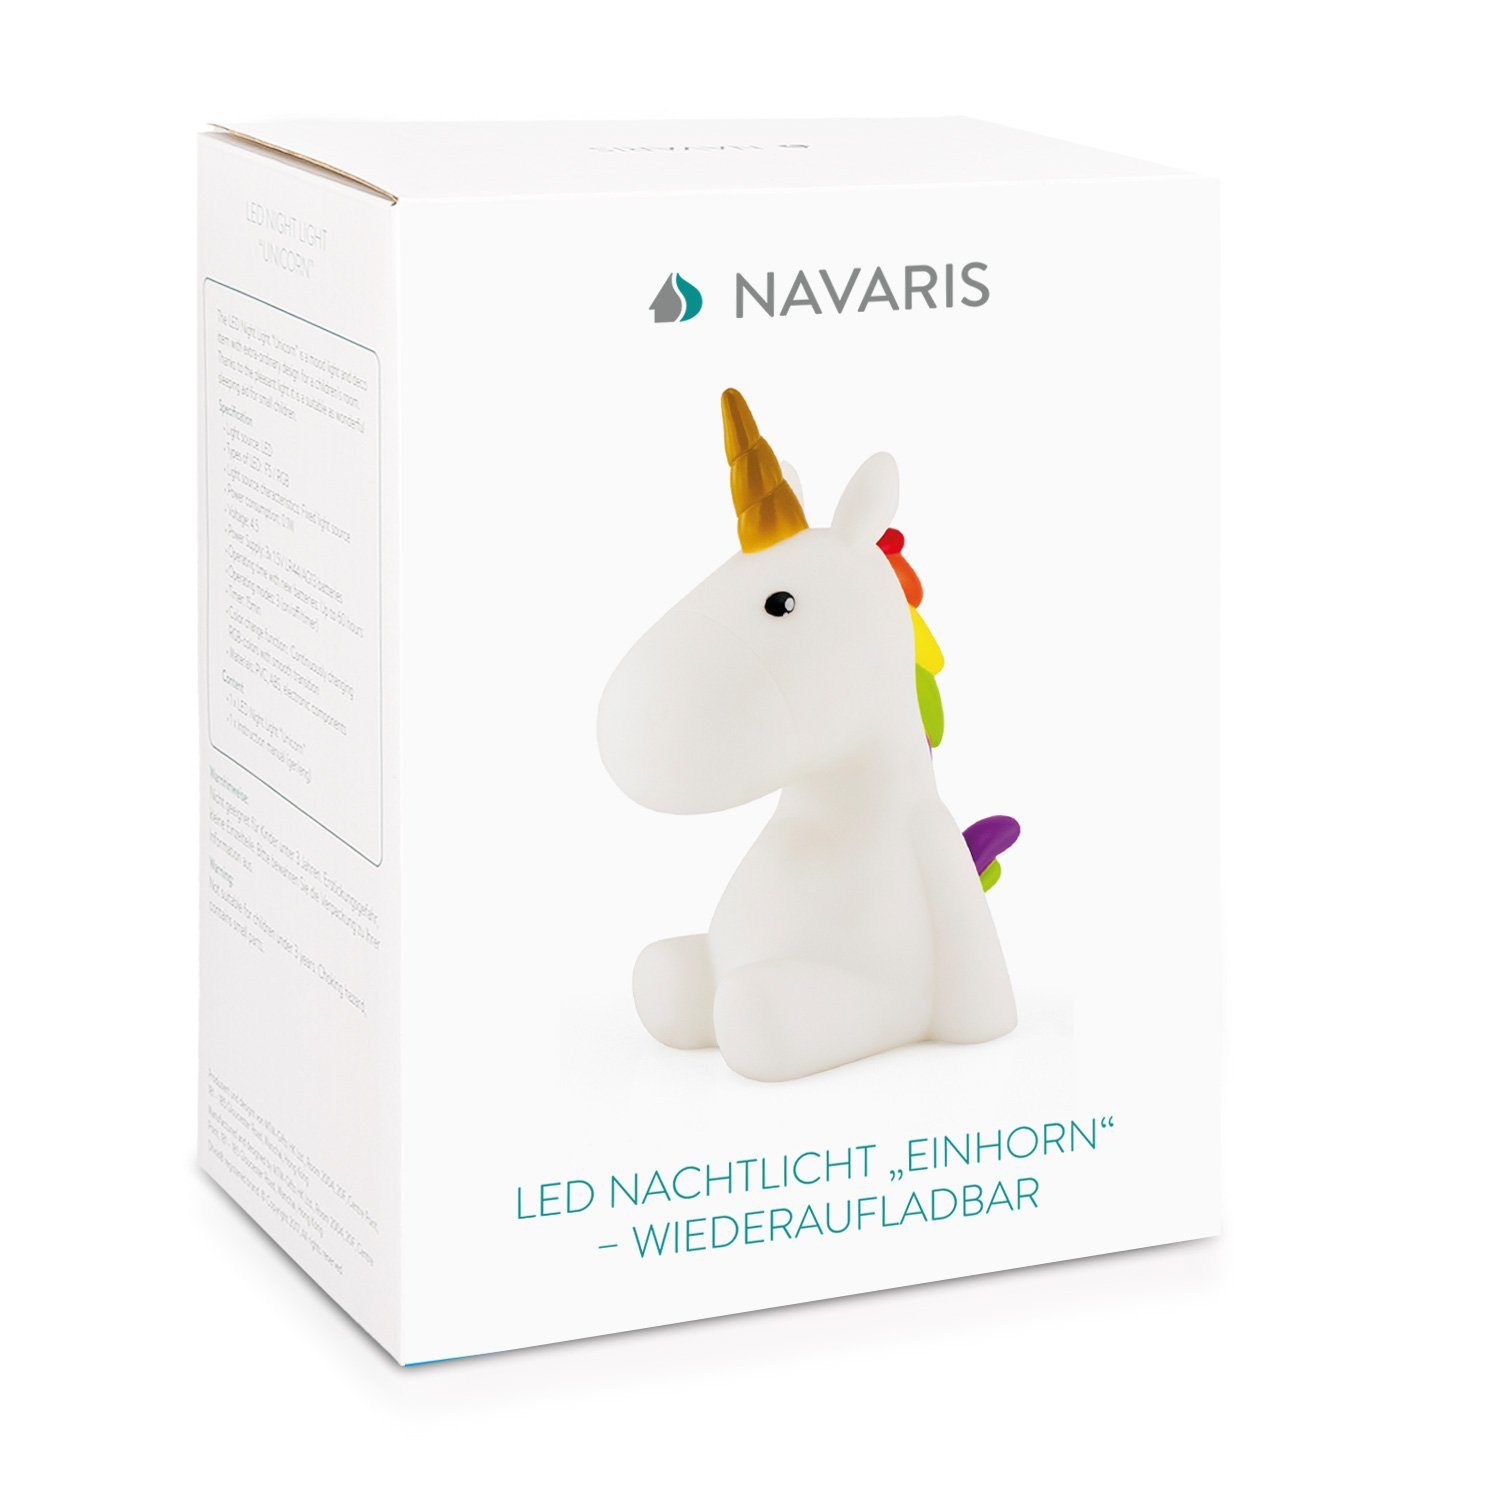 Navaris LED Nachtlicht Timer Einhorn Wiederaufladbare 60 min LED Nachtleuchte, Weiß